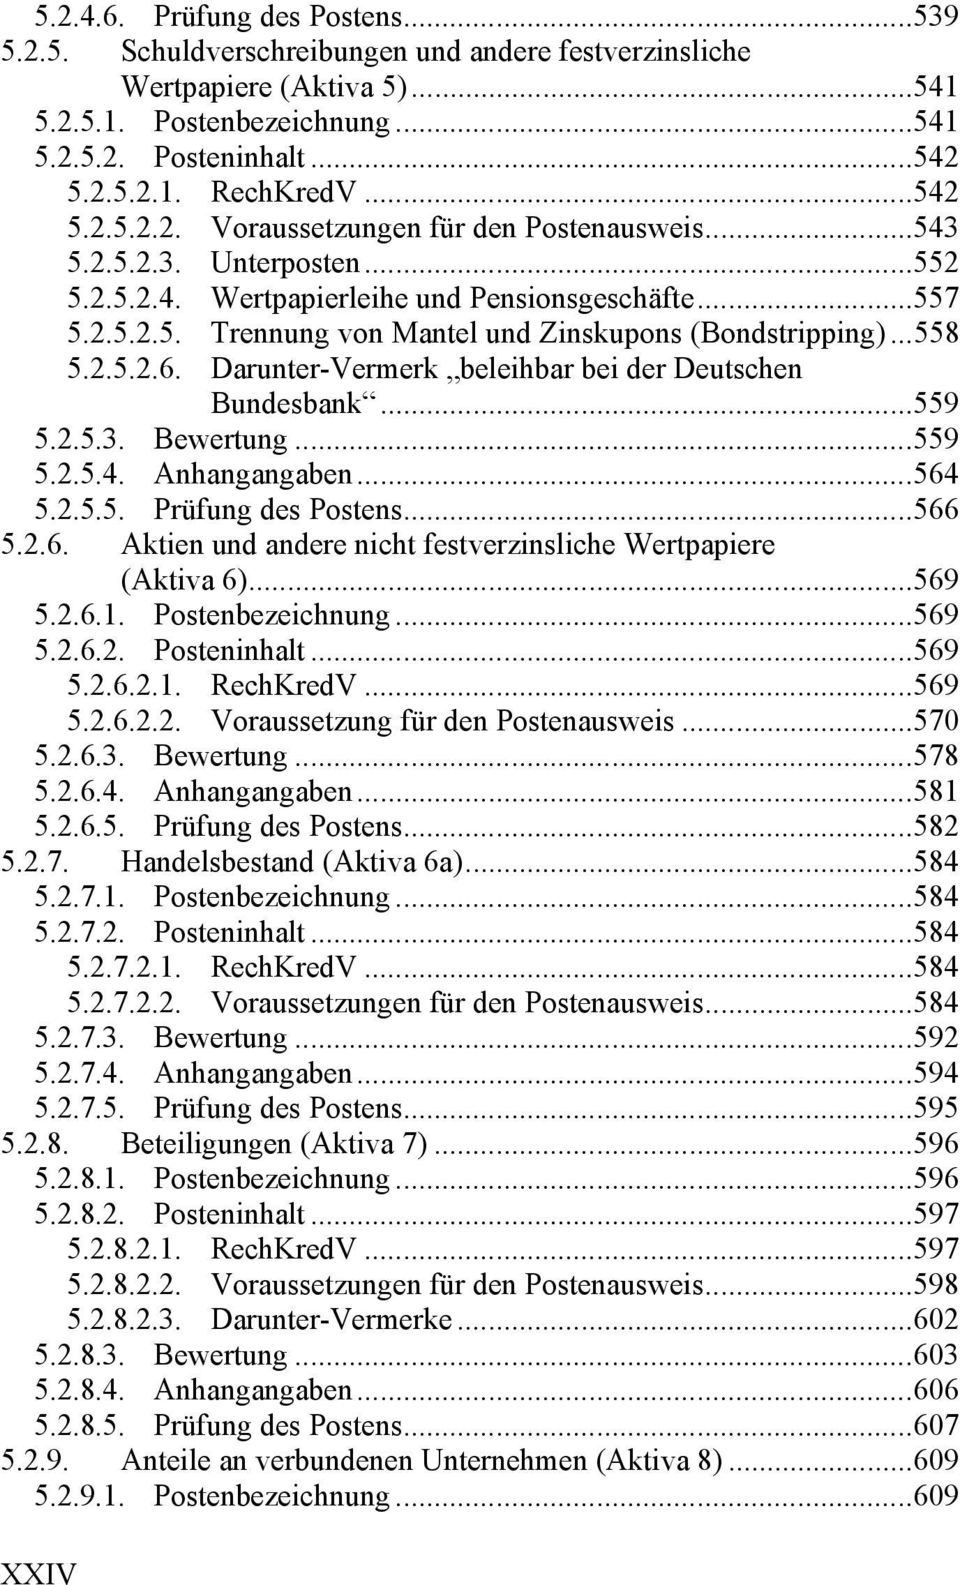 .. 558 5.2.5.2.6. Darunter-Vermerk beleihbar bei der Deutschen Bundesbank... 559 5.2.5.3. Bewertung... 559 5.2.5.4. Anhangangaben... 564 5.2.5.5. Prüfung des Postens... 566 5.2.6. Aktien und andere nicht festverzinsliche Wertpapiere (Aktiva 6).